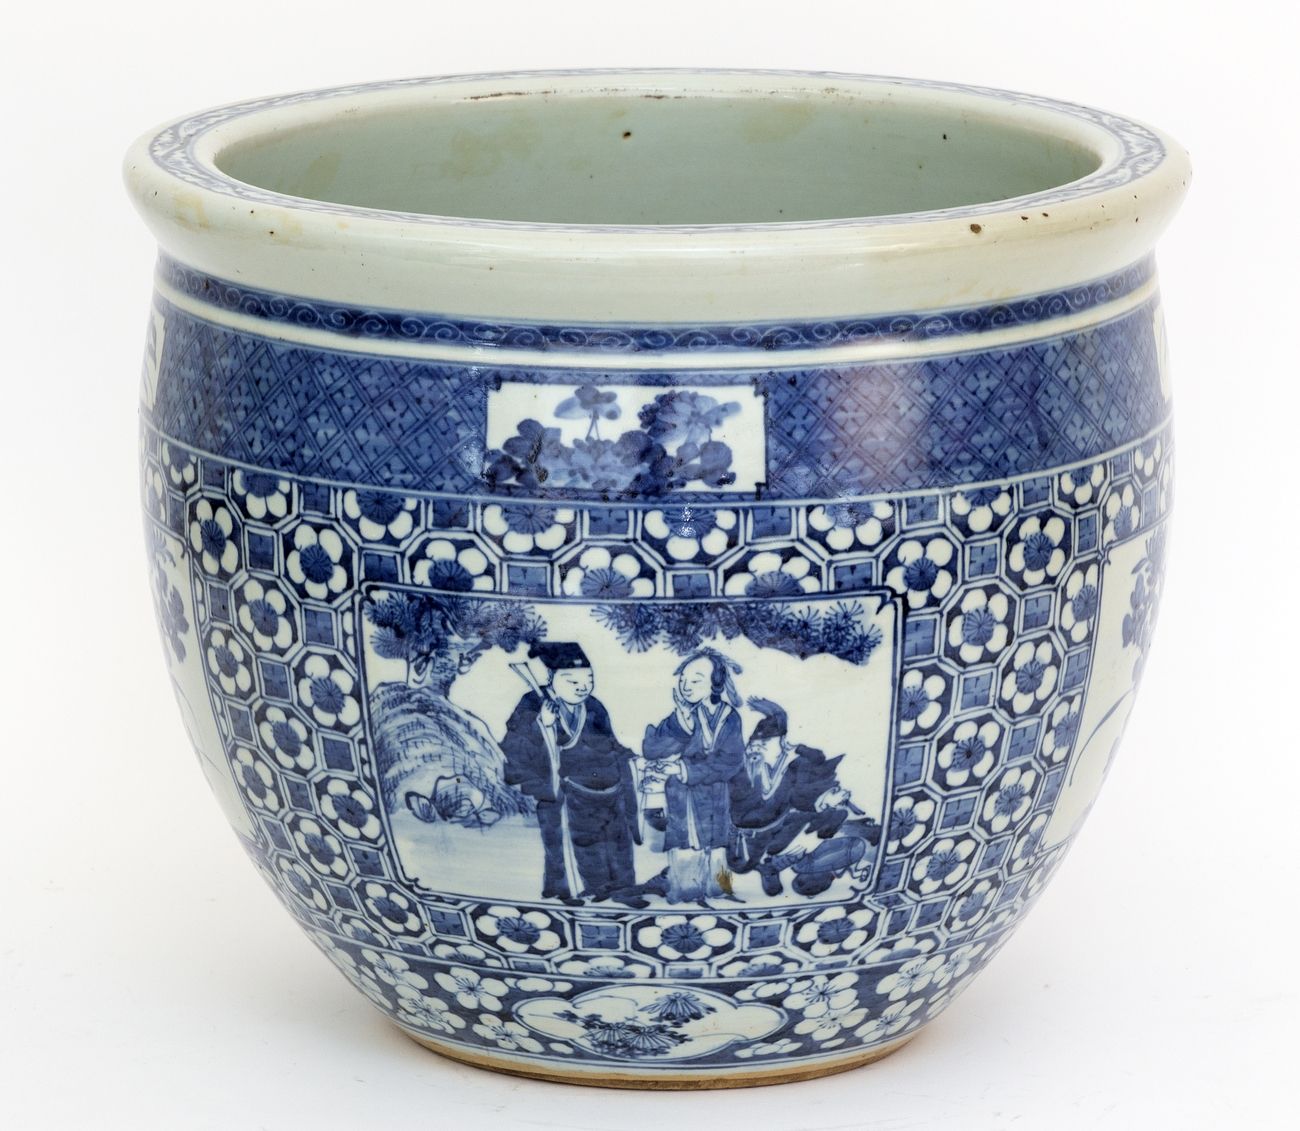 Null China, siglo XIX
Tapa de porcelana con decoración en esmalte azul y blanco &hellip;